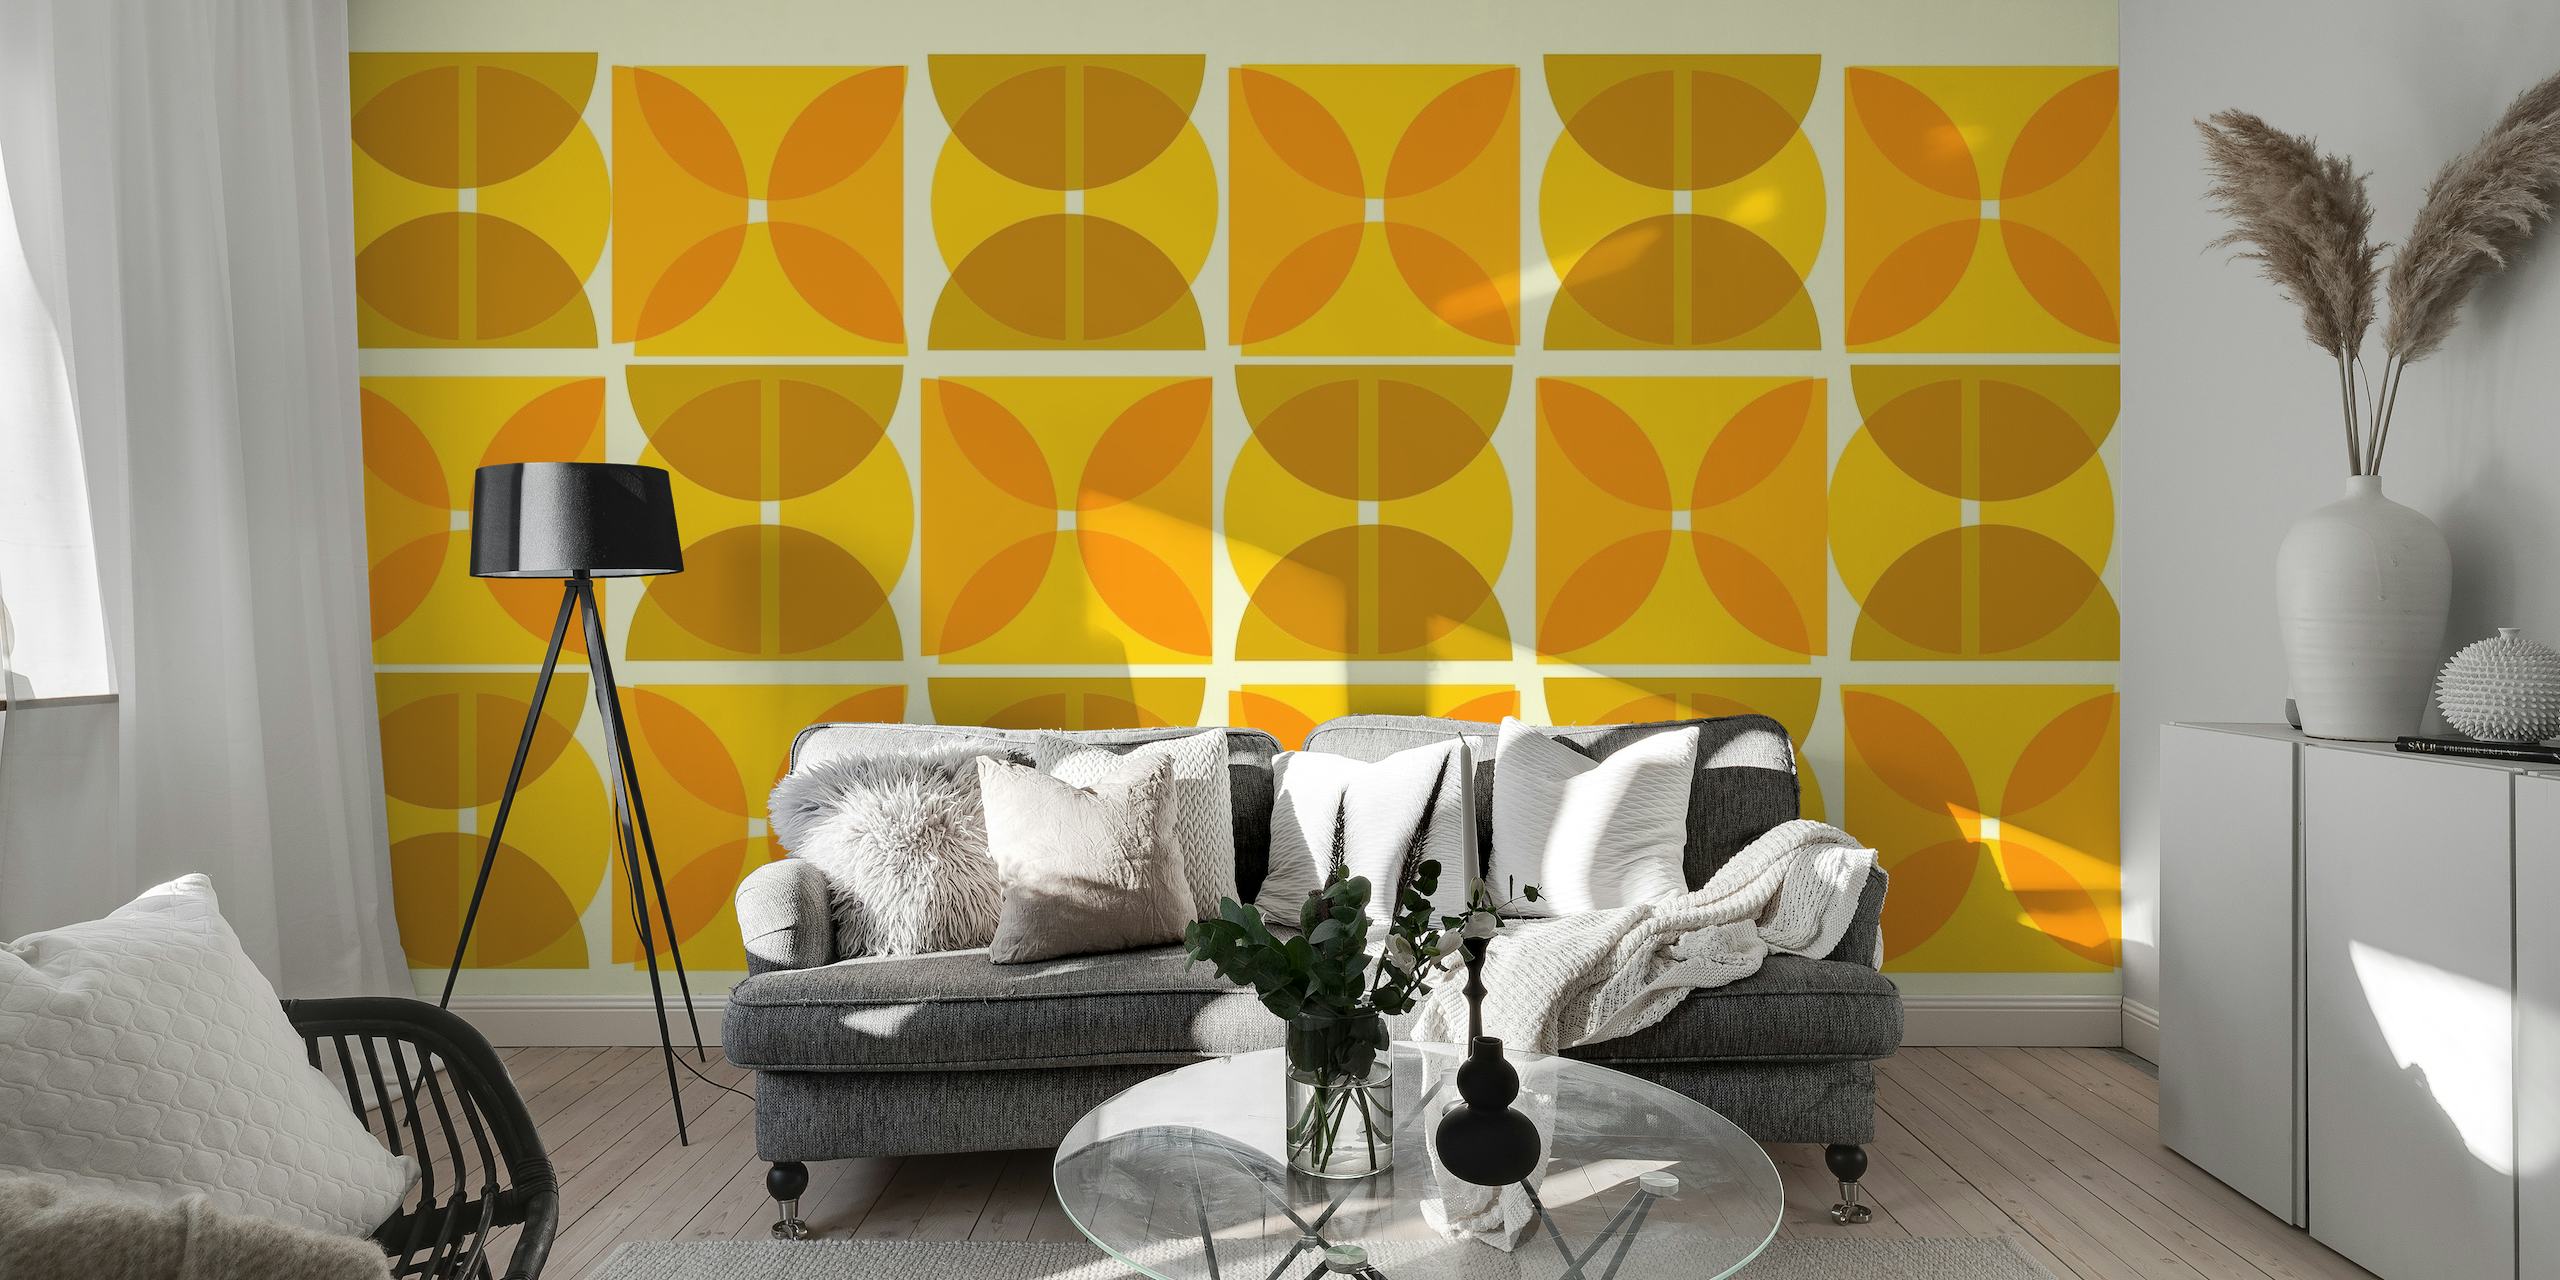 Bauhausin inspiroima seinämaalaus abstrakteilla geometrisillä muodoilla keltaisen ja ruskean sävyissä